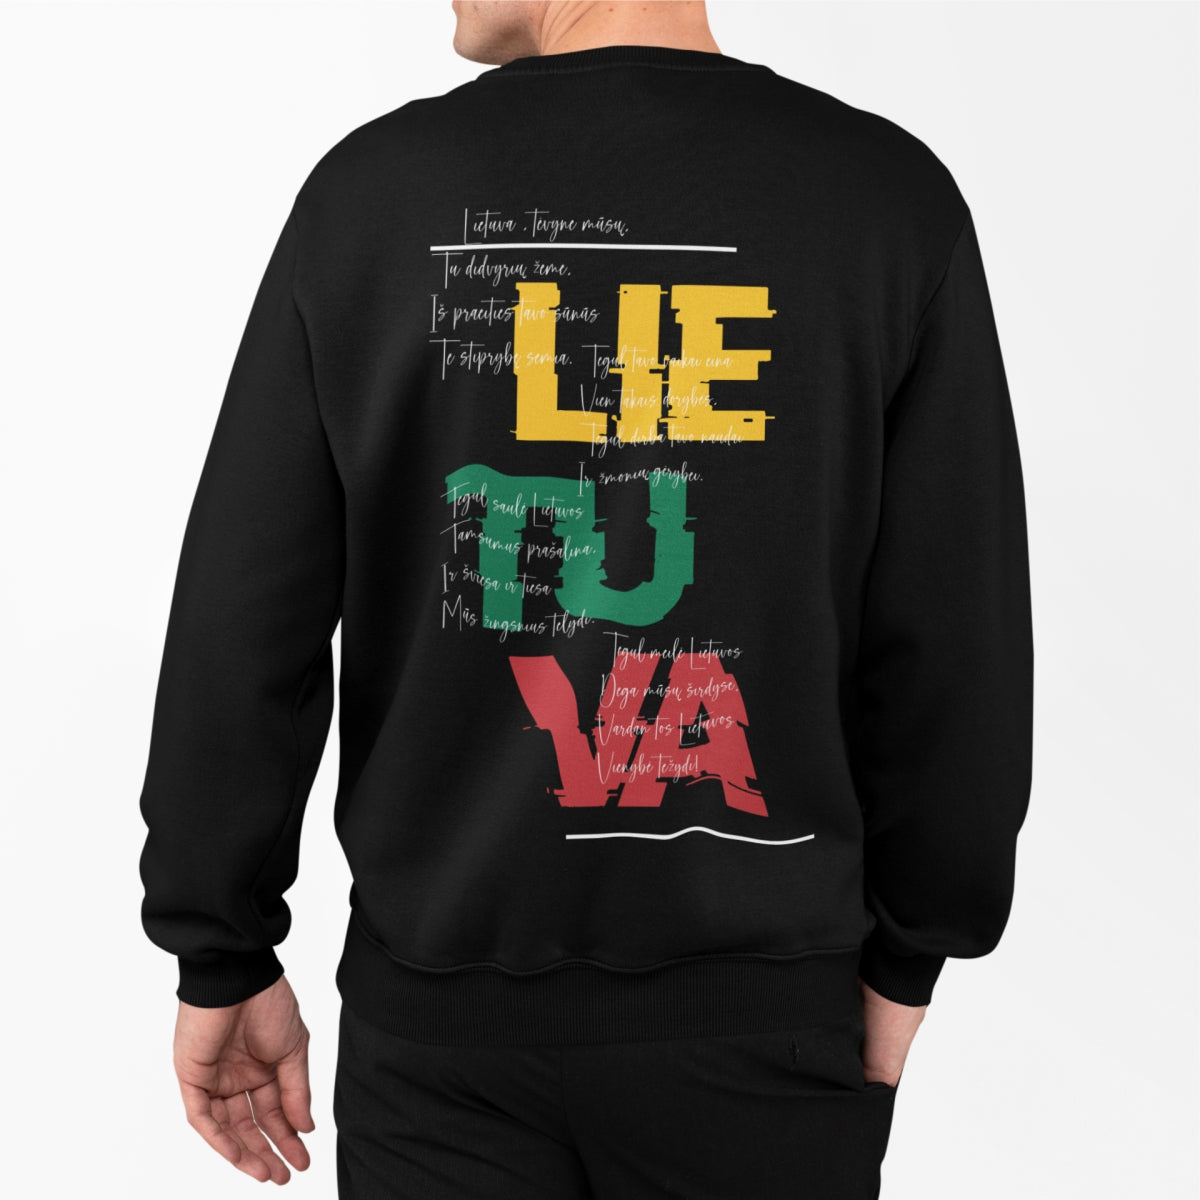 Juodas UNISEX džemperis su spauda ant nugaros "Lietuva, tėvyne mūsų"